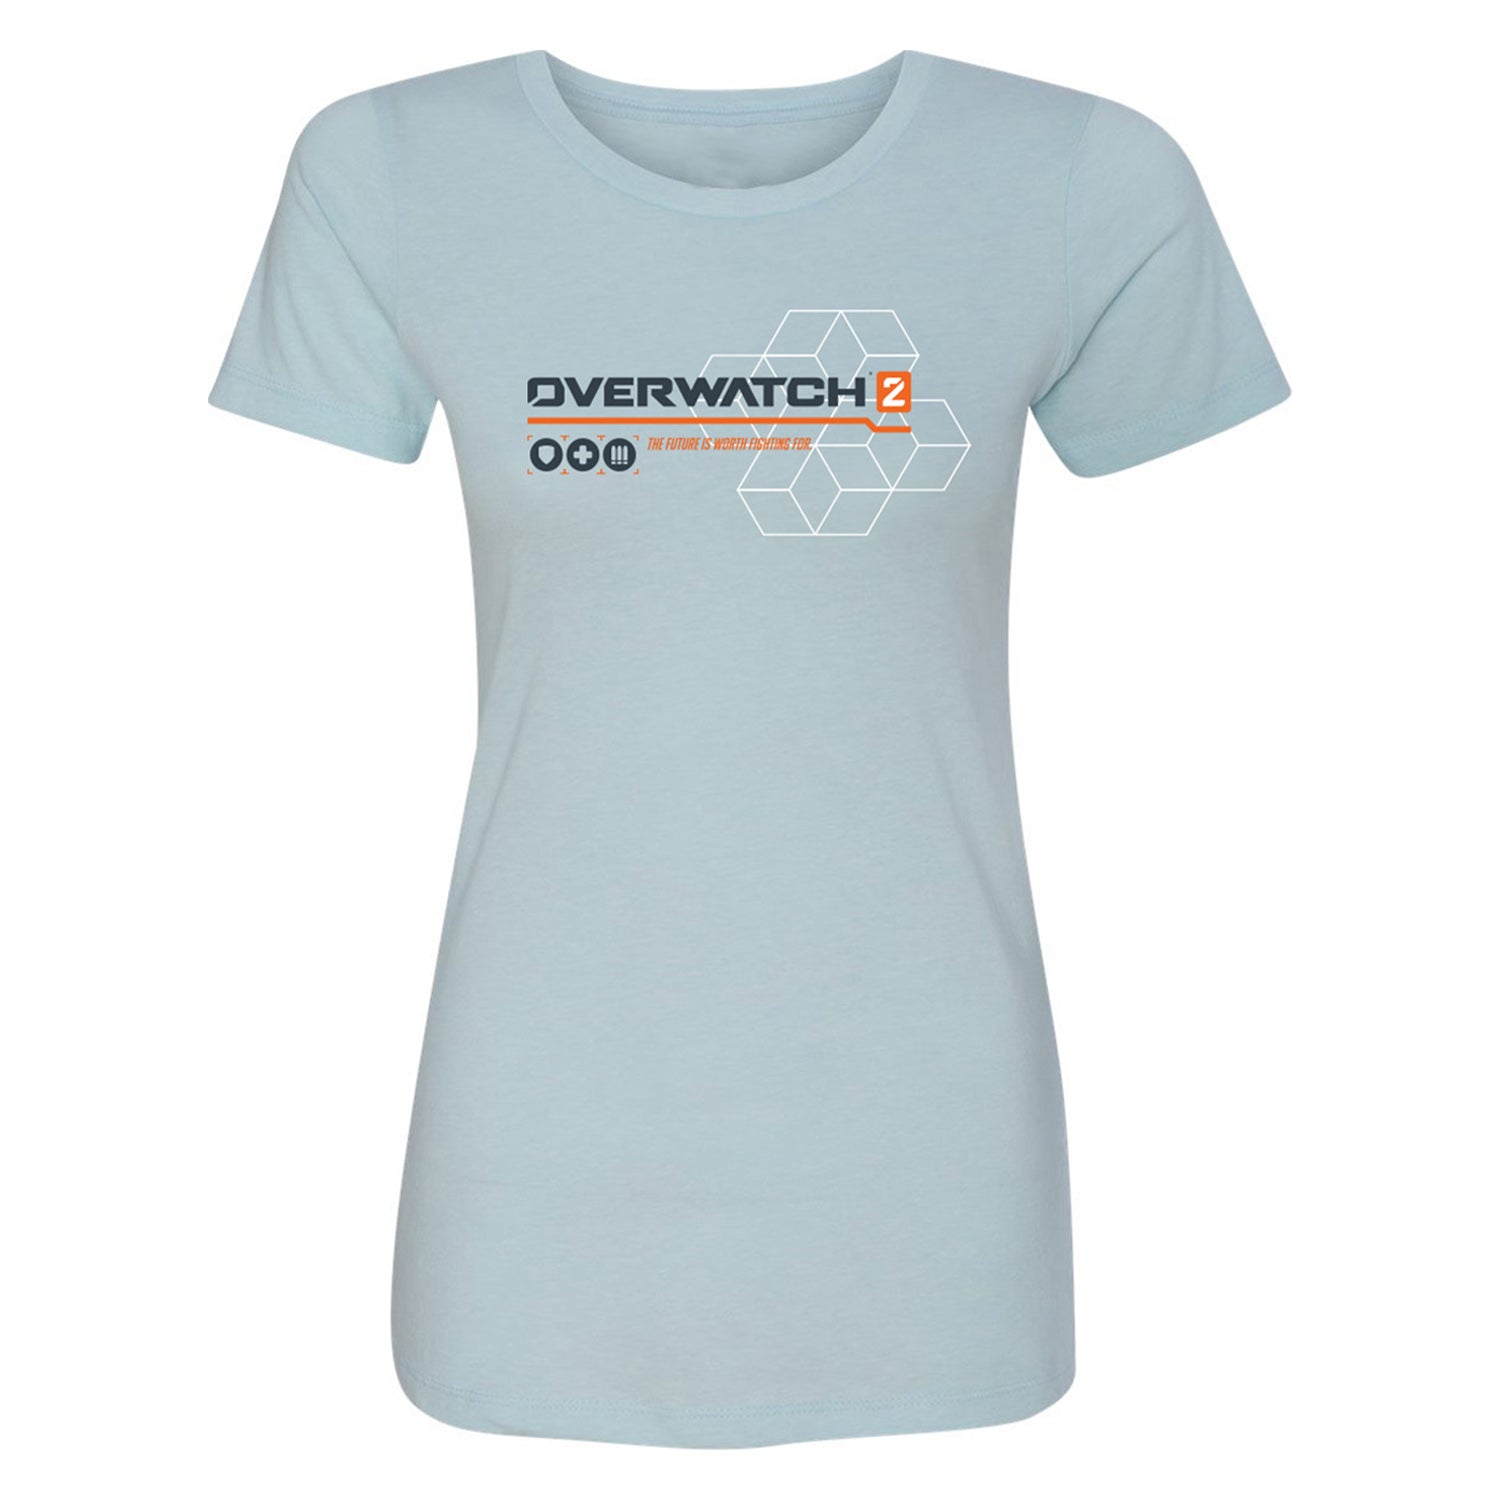 Overwatch 2 Heroes Women's T-Shirt - Front View